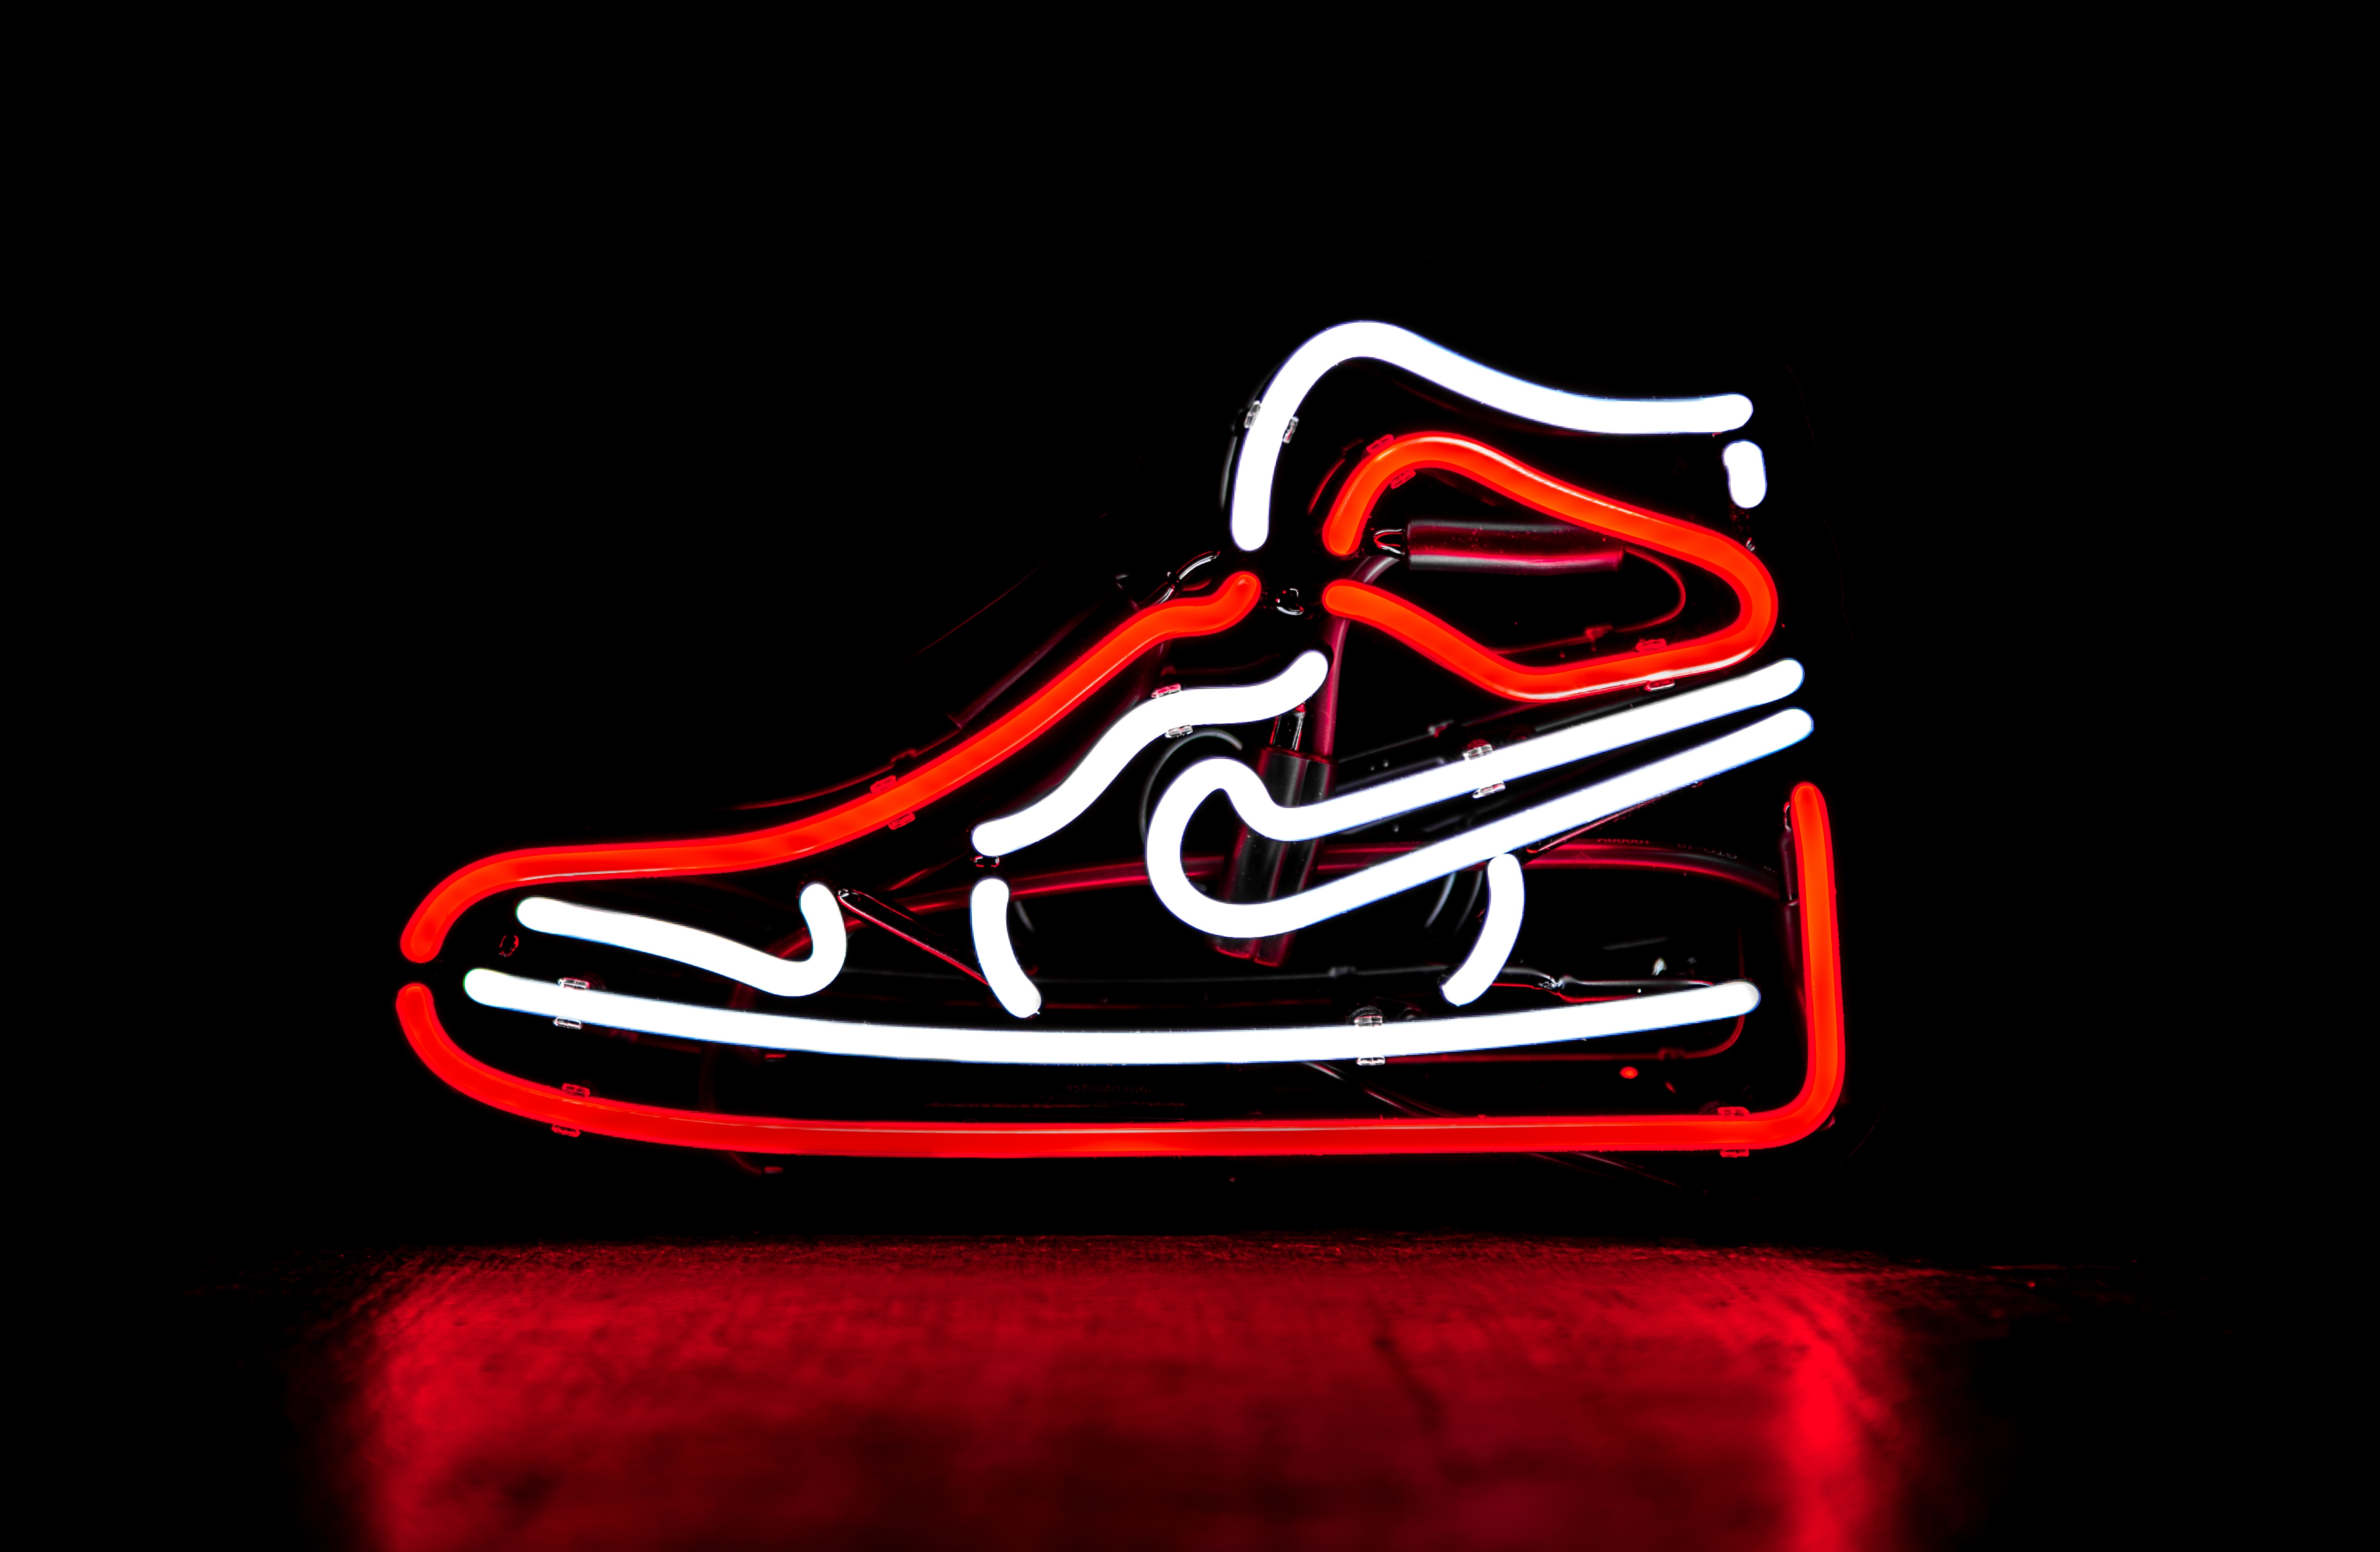 Neon Lamp in the shape of a Nike Sneaker